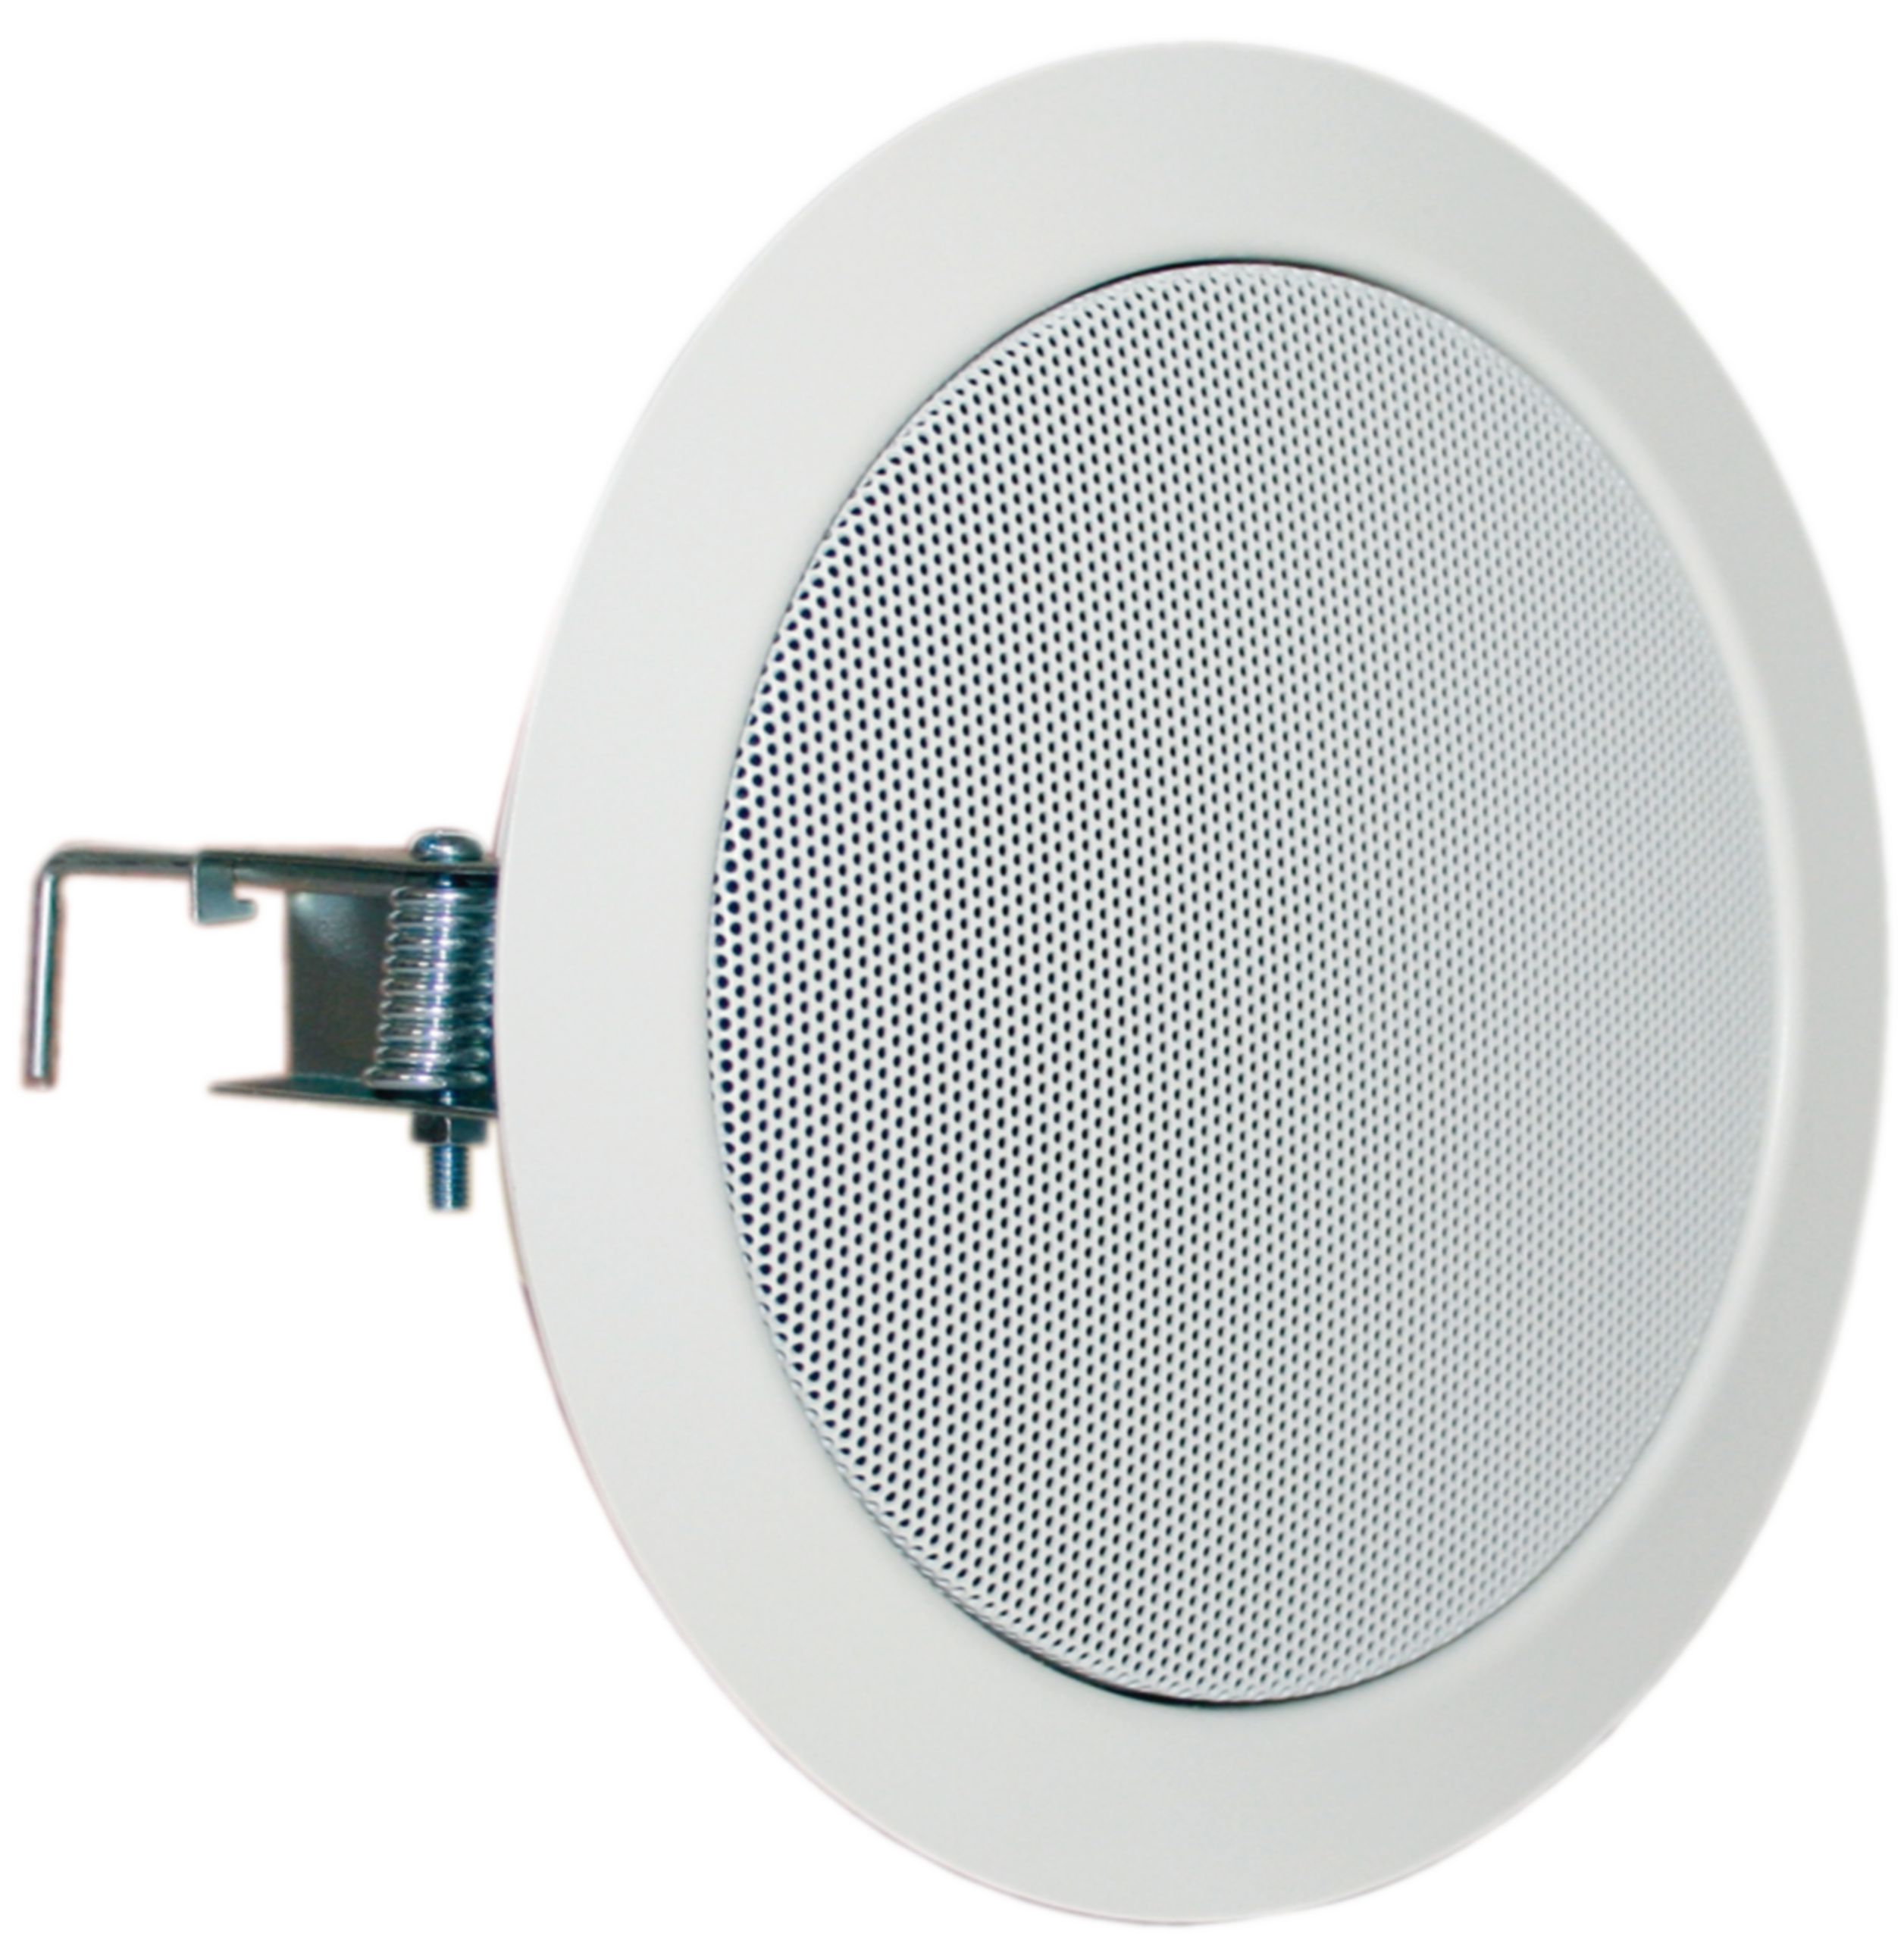 Hi-Fi stropní reproduktor, 13 cm (5") 8 Ohm Visaton, VS-DL13/2T